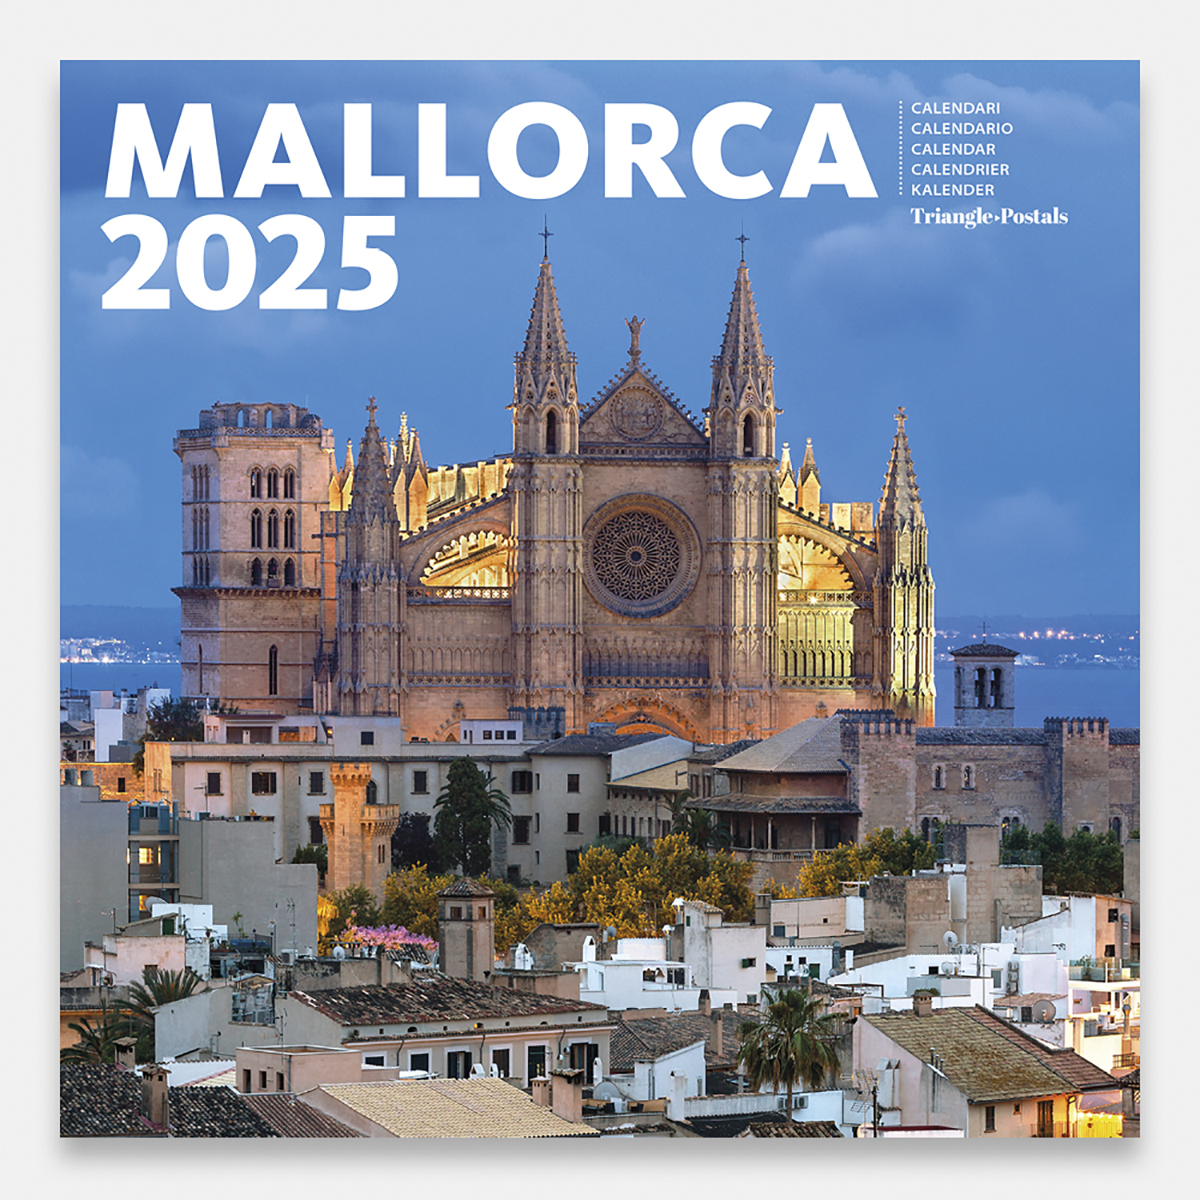 Calendar 2025 Mallorca 25mag2 calendario pared 2025 mallorca